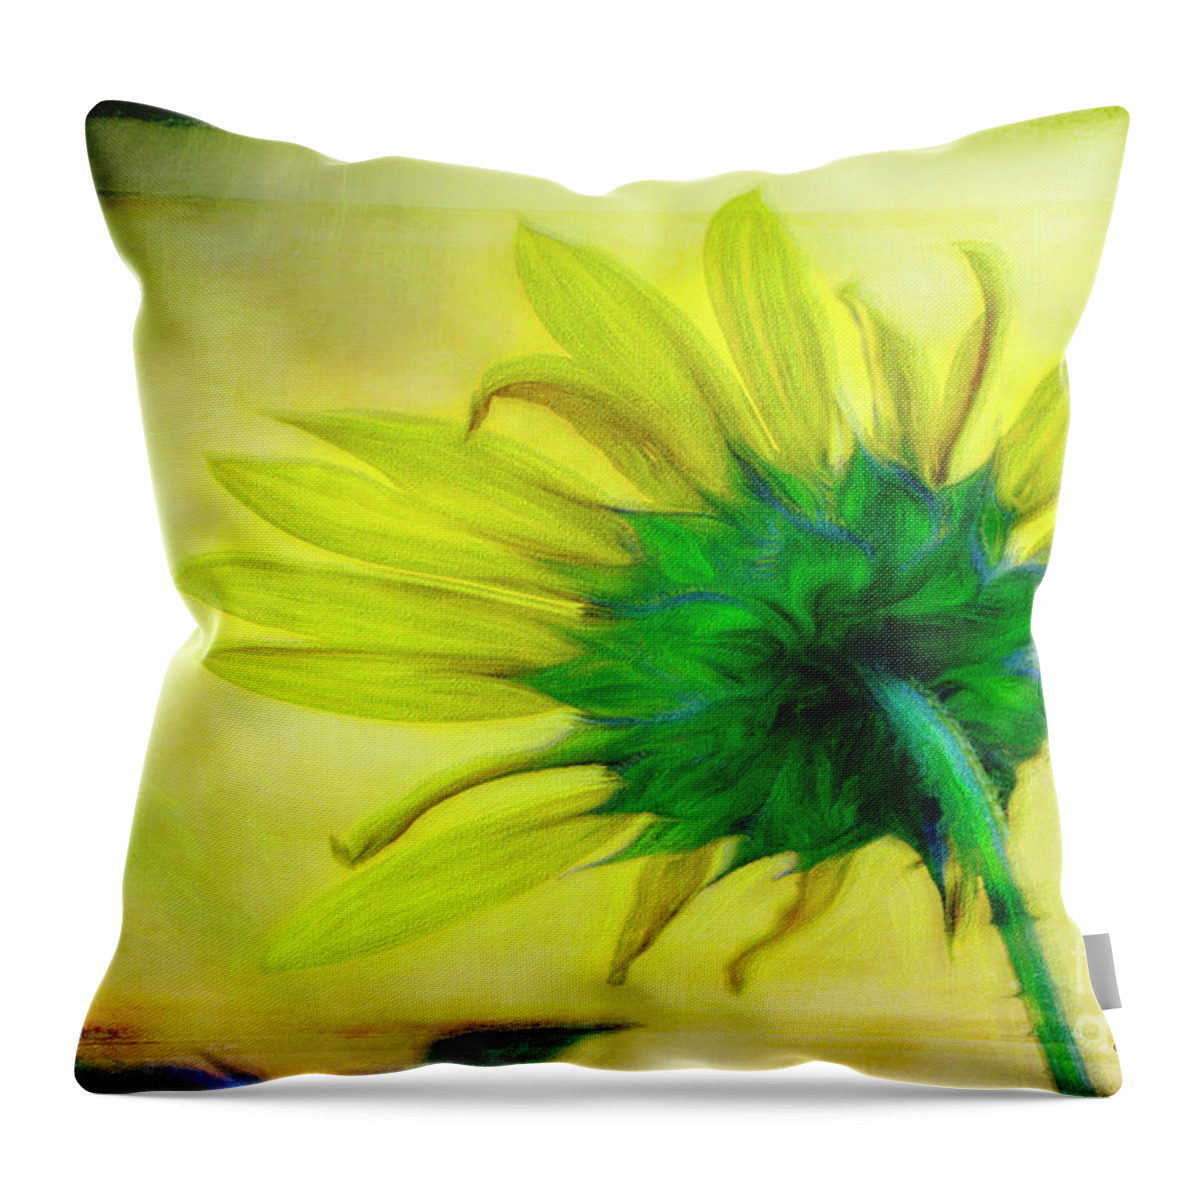 Sun Flowers Throw Pillow featuring the digital art Rays of Summer by Rebecca Langen